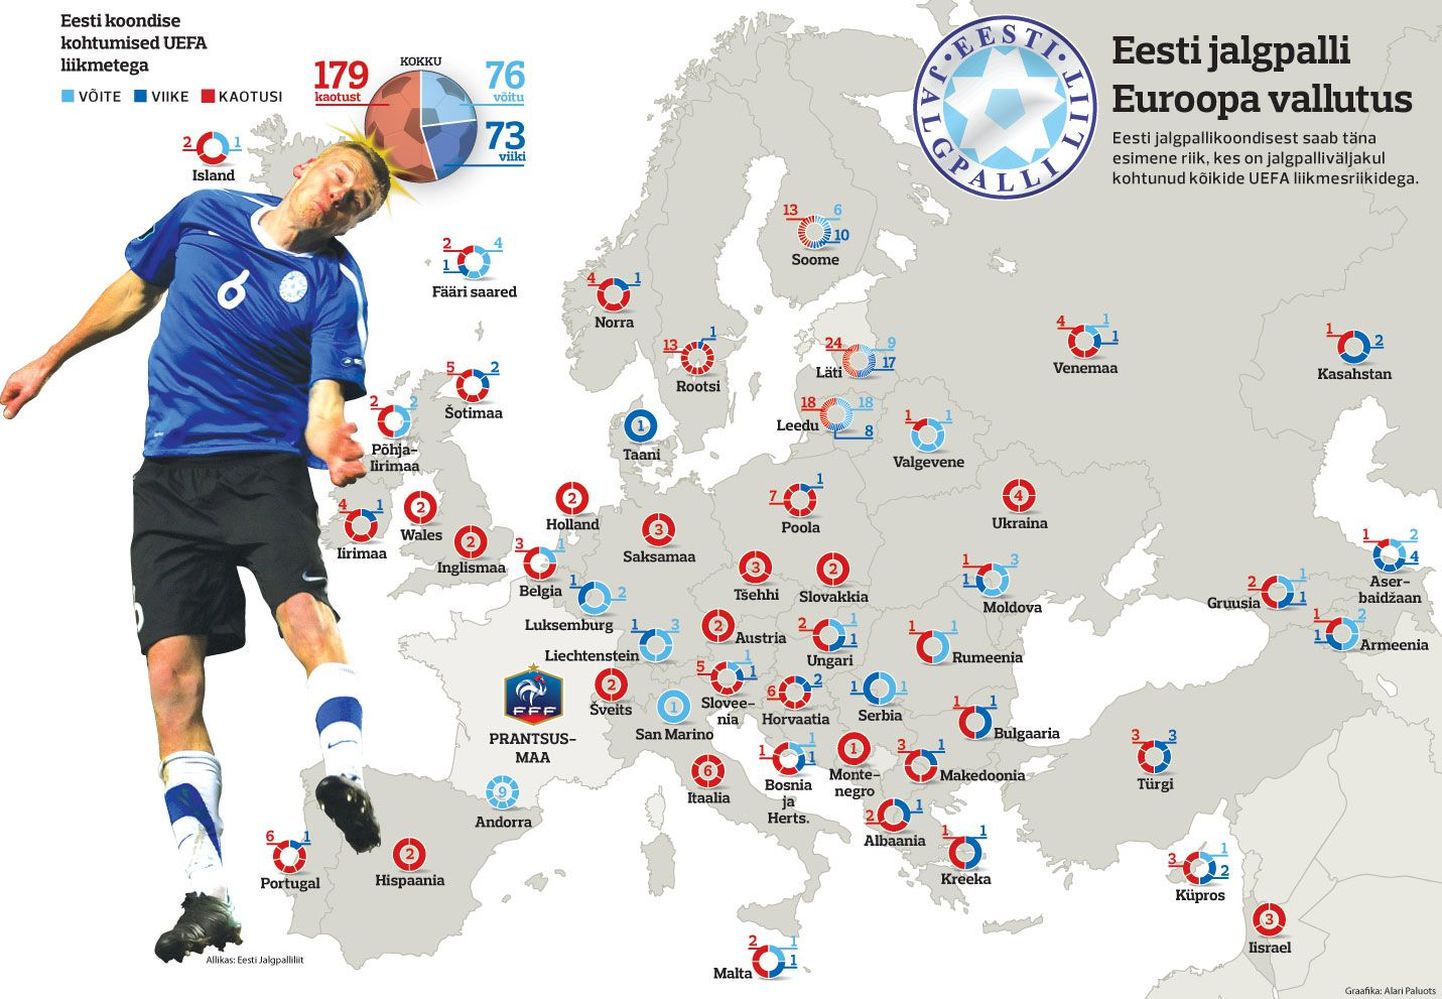 Eesti jalgpalli Euroopa vallutus.